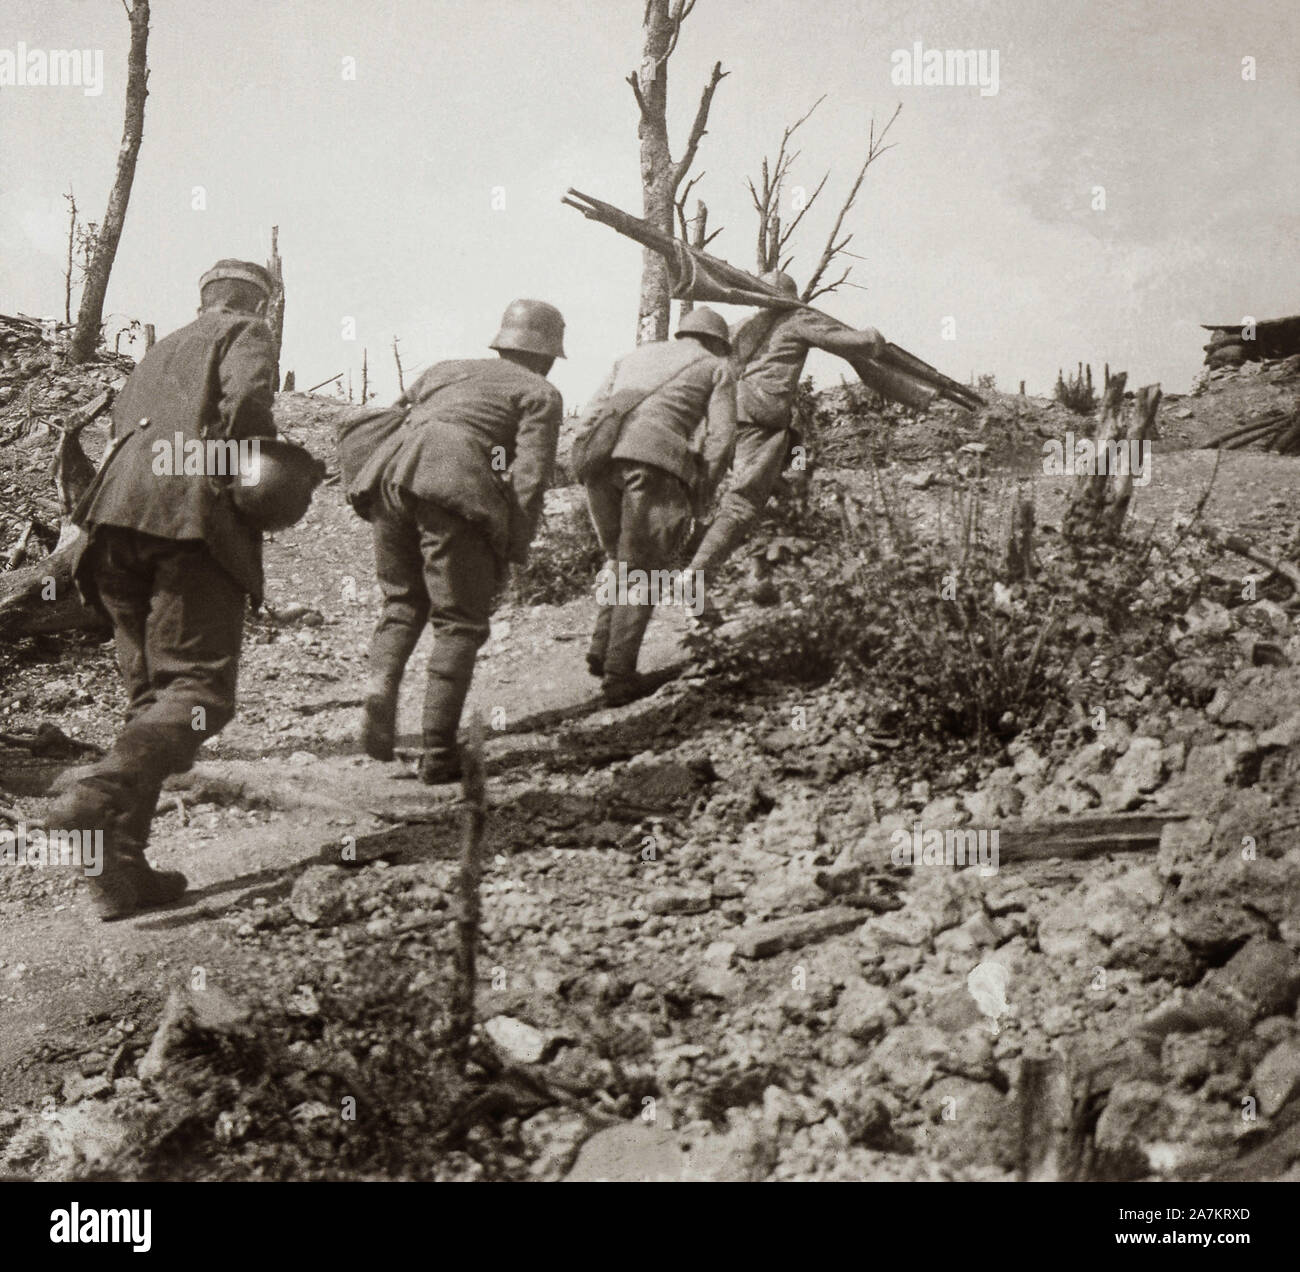 Premiere Guerre Mondiale, soldats brancardiers sur les champs de bataille a Douaumont pres de Verdun. Photographie, 1914-1918, Paris. Stock Photo